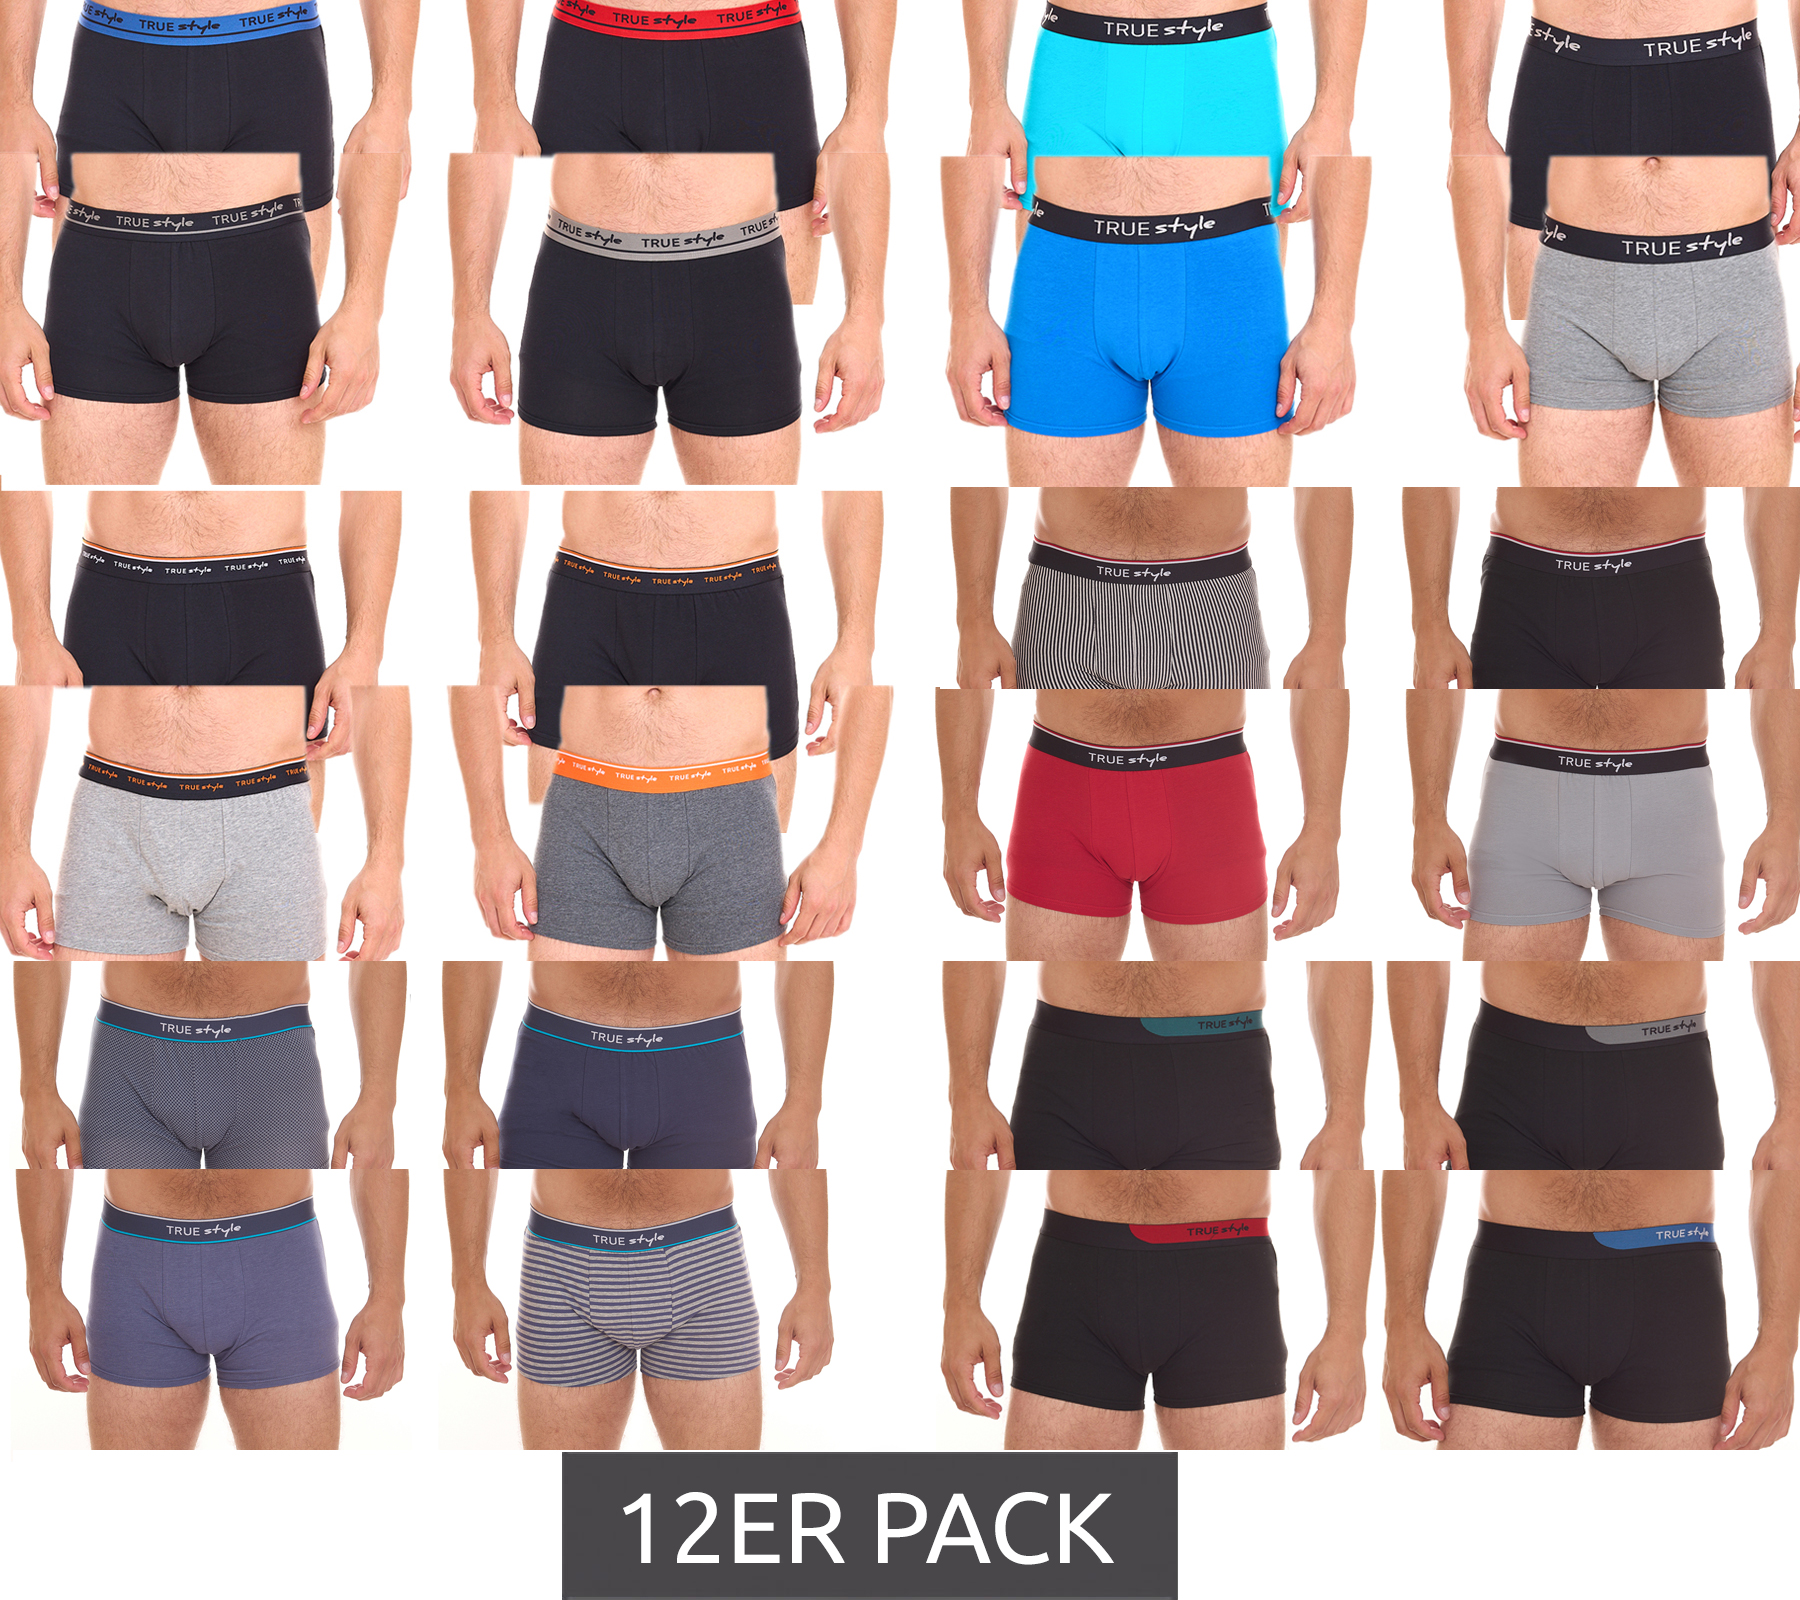 12er Pack TRUE style Herren Boxershorts nachhaltige Retro-Shorts aus Baumwolle Schwarz, Grau, Blau, Rot in verschiedenen Packs von TRUE style